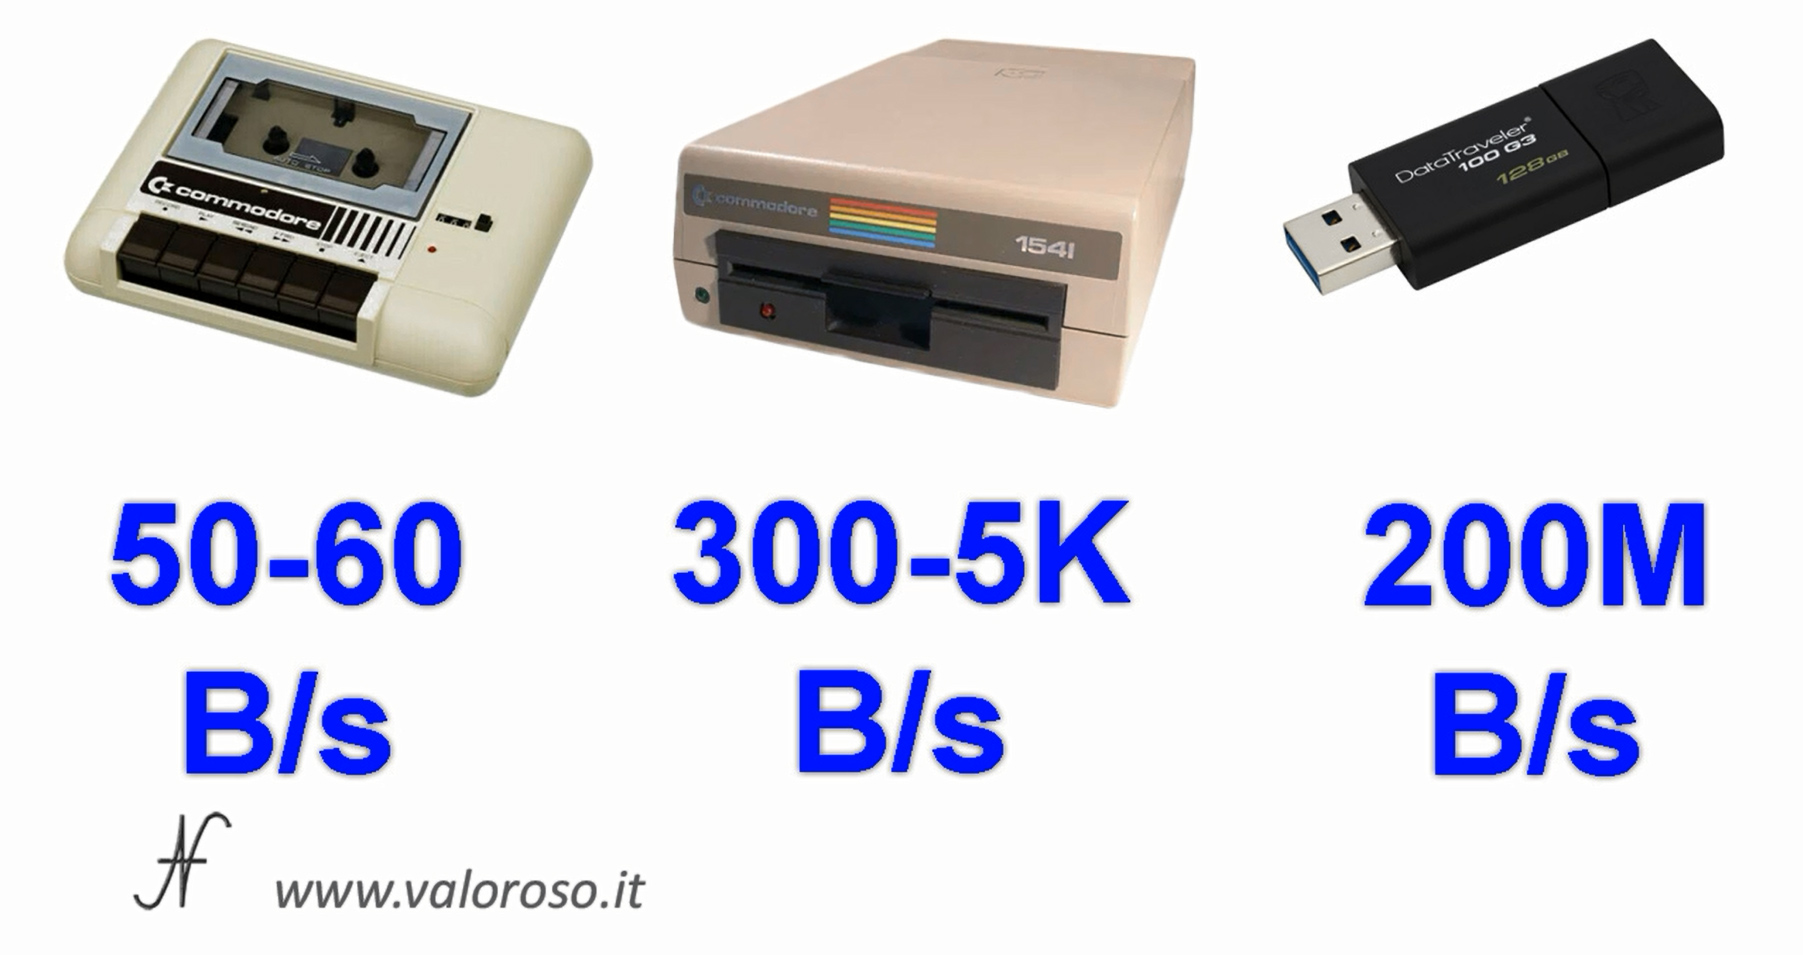 Commodore Vs PC moderno, paragone velocità, datassette, pendrive USB3, floppy disk drive 1541